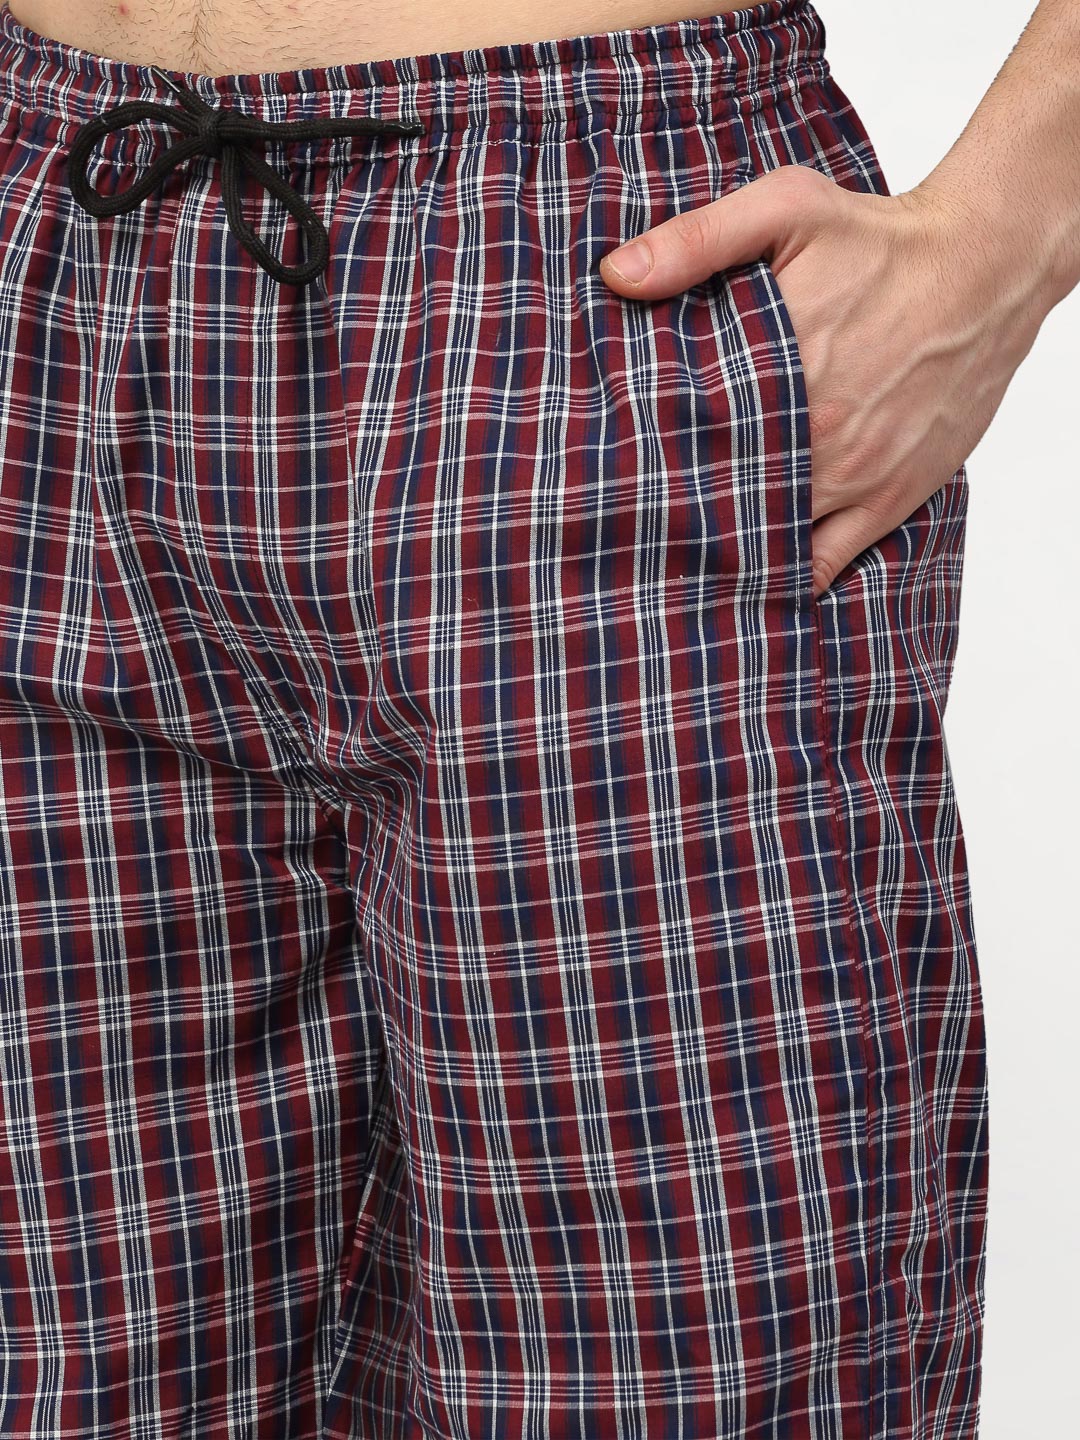 Jainish Men's Multicolor Cotton Checked Track Pants ( JOG 019Multi ) - Distacart